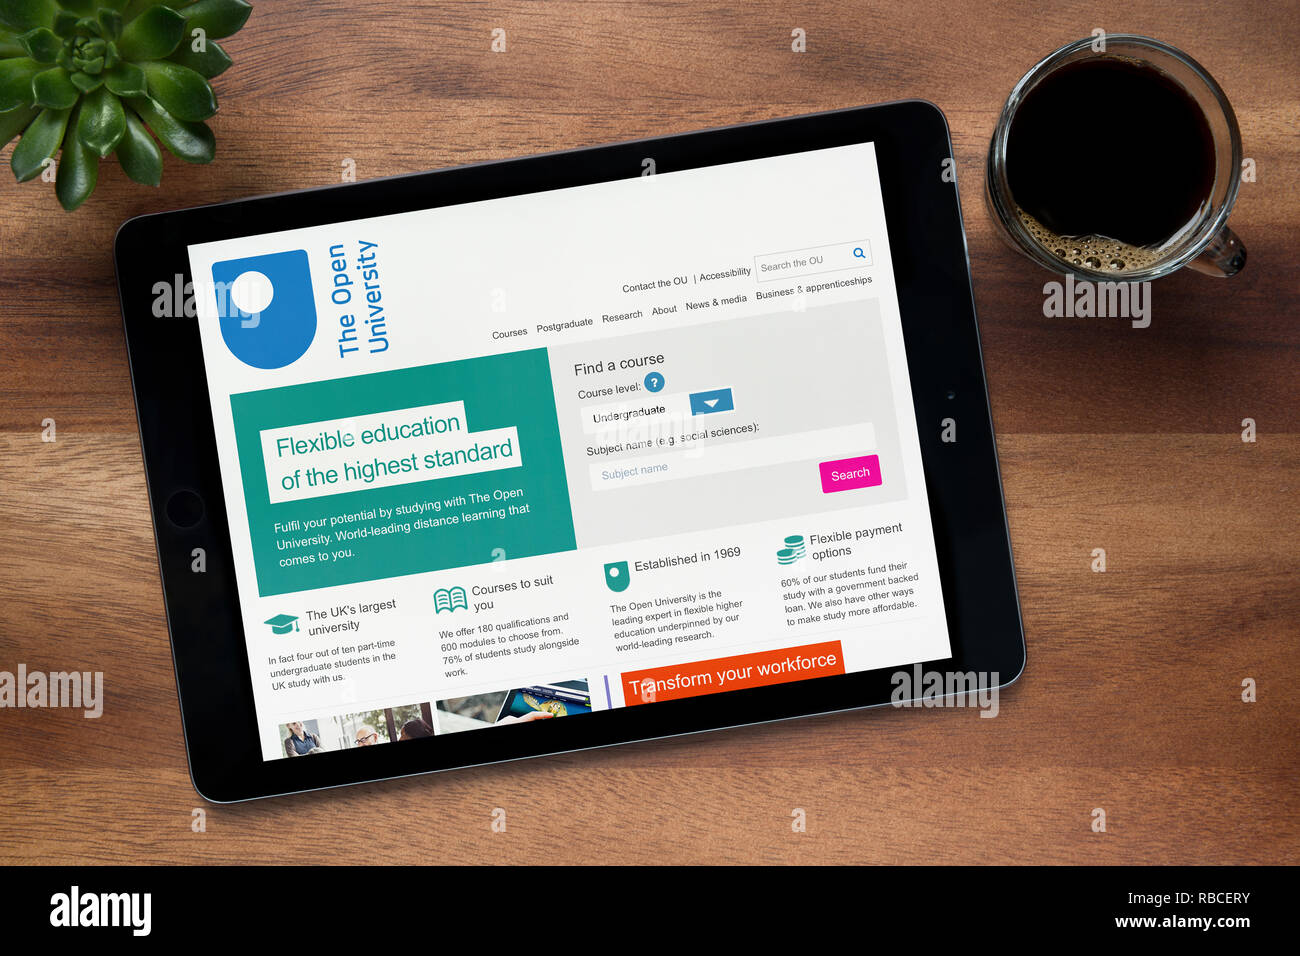 Le site internet de l'Université ouverte est vu sur un iPad tablet, sur une table en bois avec une machine à expresso et d'une plante (usage éditorial uniquement). Banque D'Images